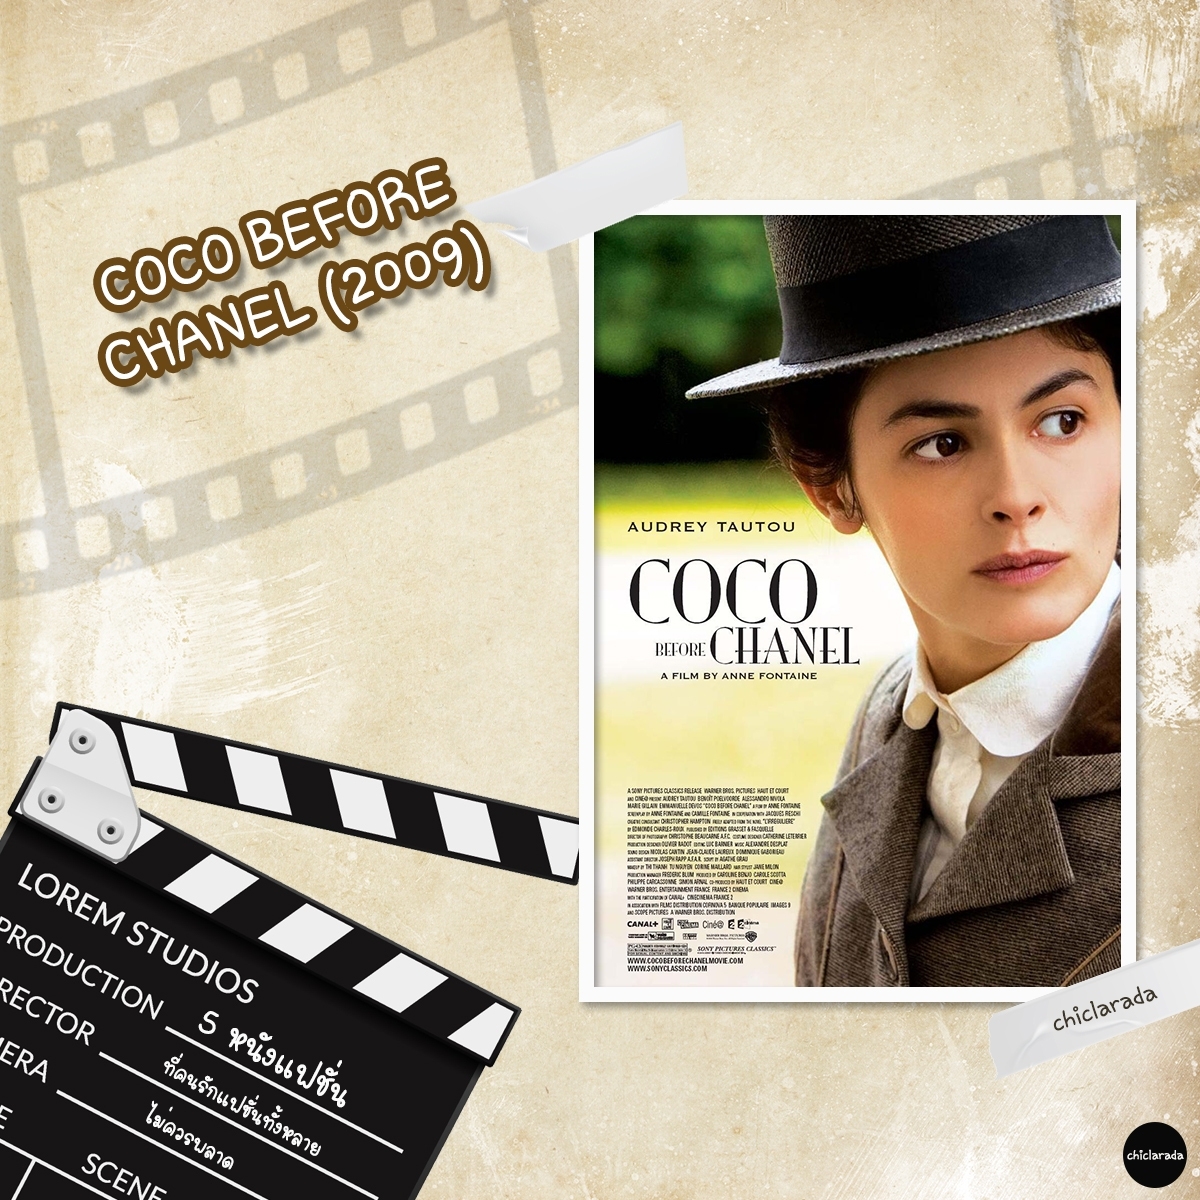 Coco before Chanel (2009) หนังแฟชั่นที่คนรักแฟชั่น